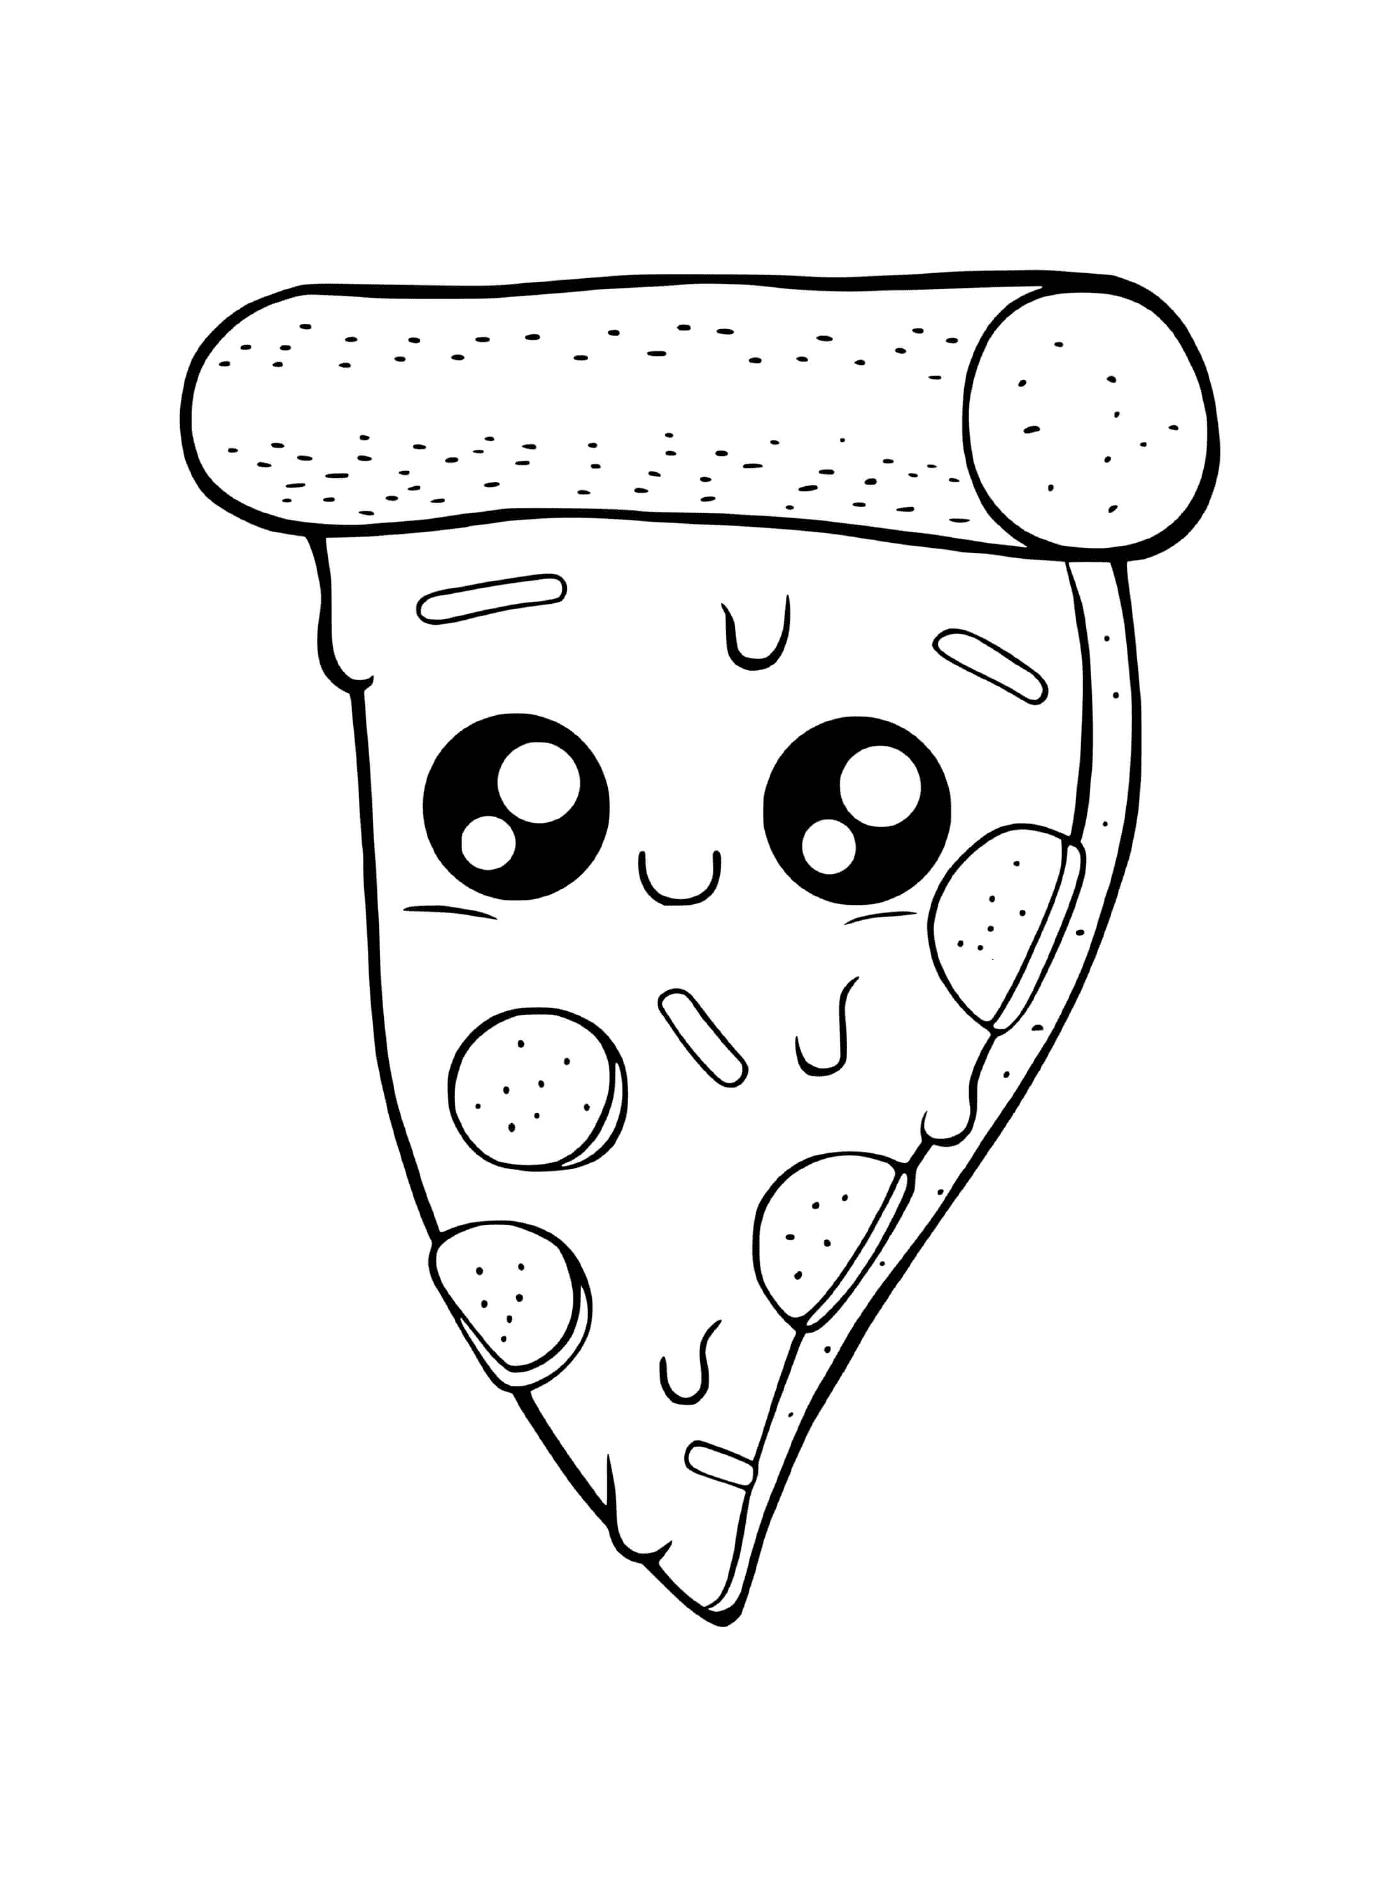  Una pizza con queso derretido 